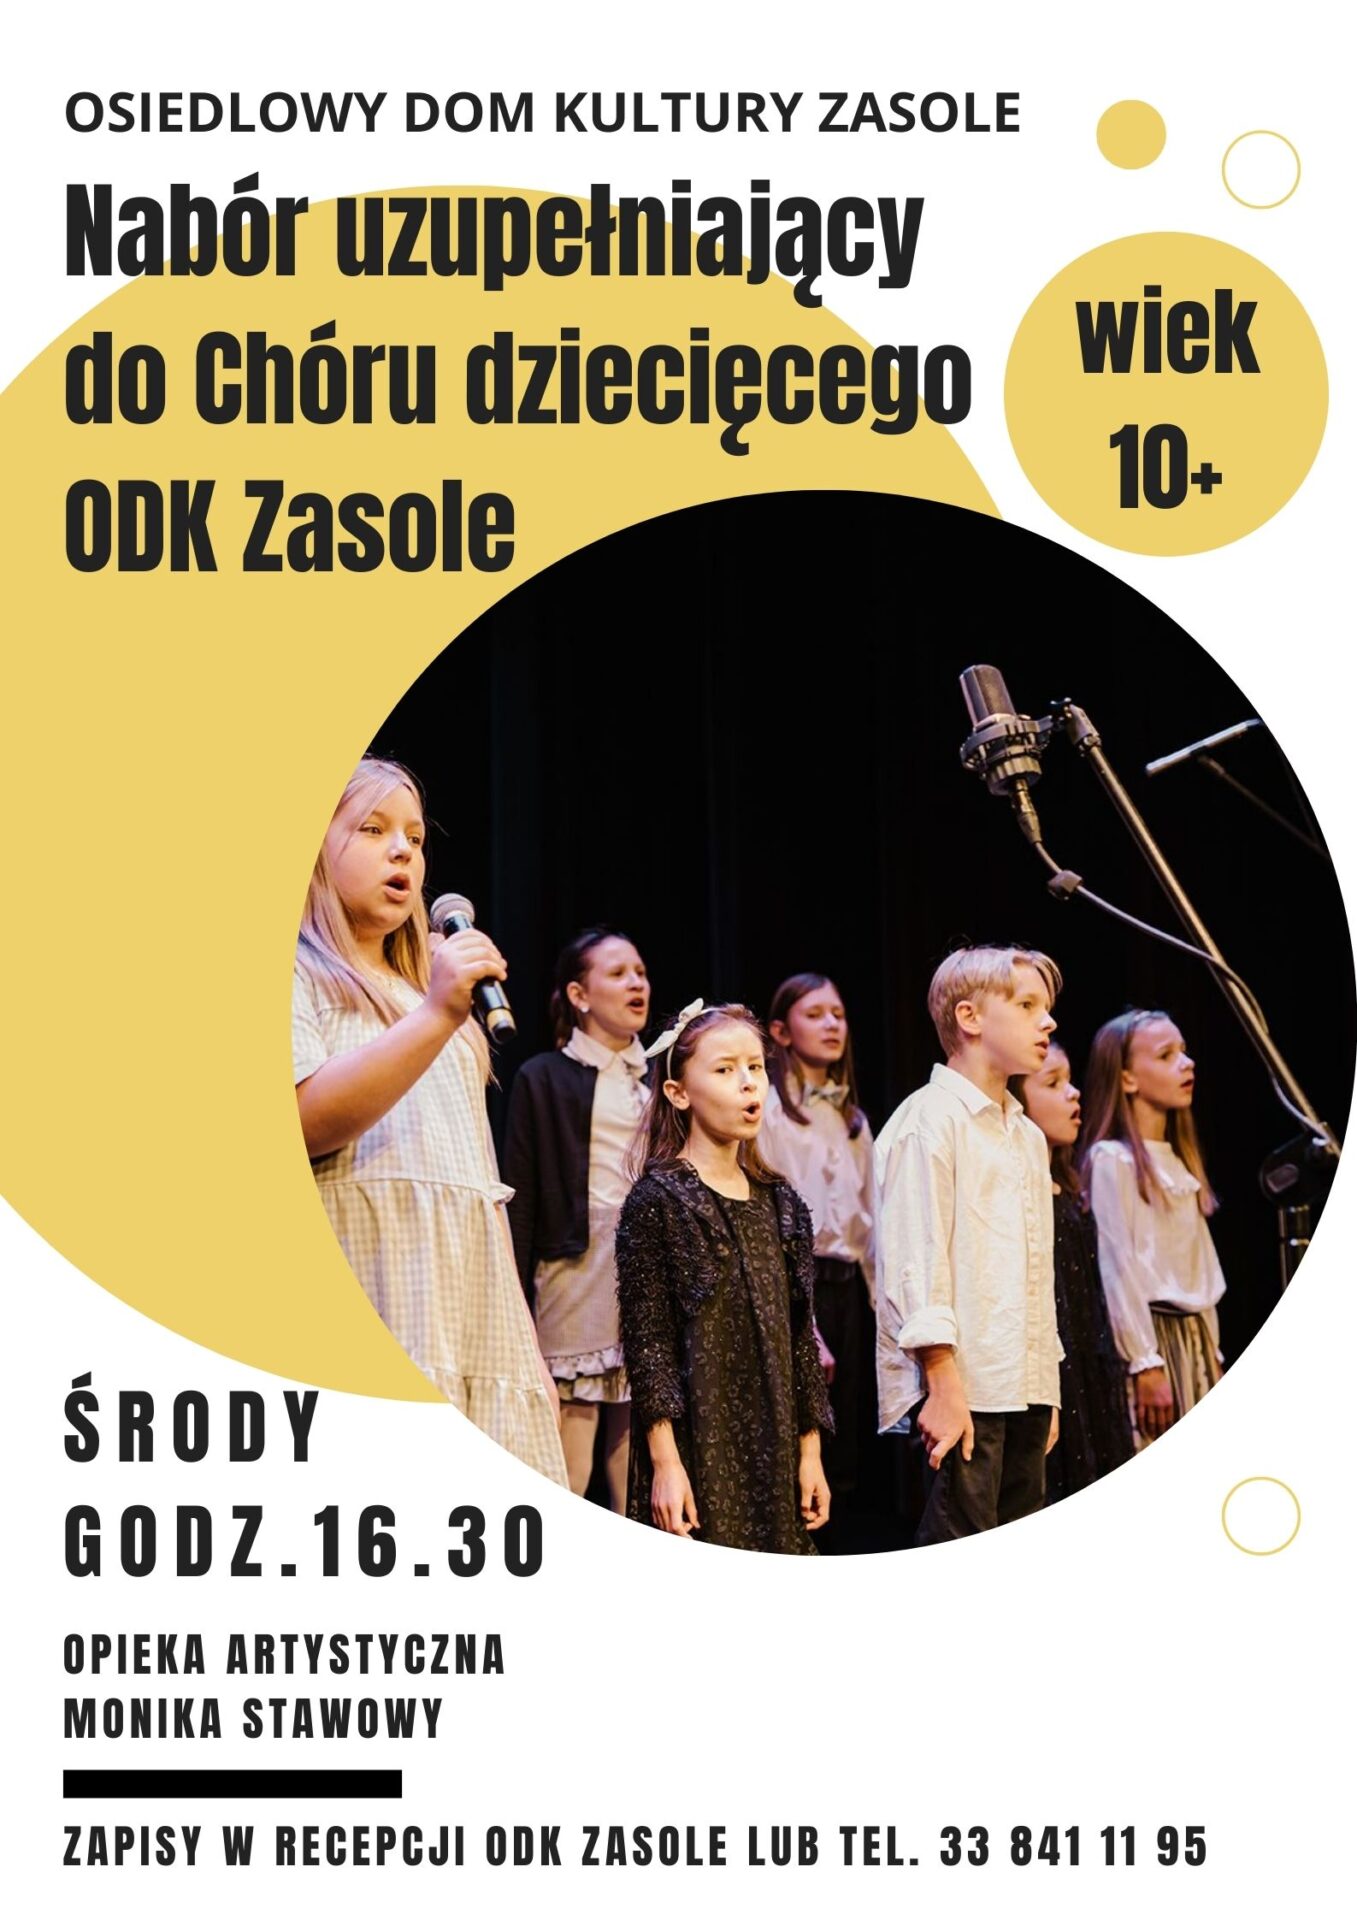 Plakat z informacją o naborze do CHóru dziecięcego ODK Zasole i zdjęcie śpiewających dzieci